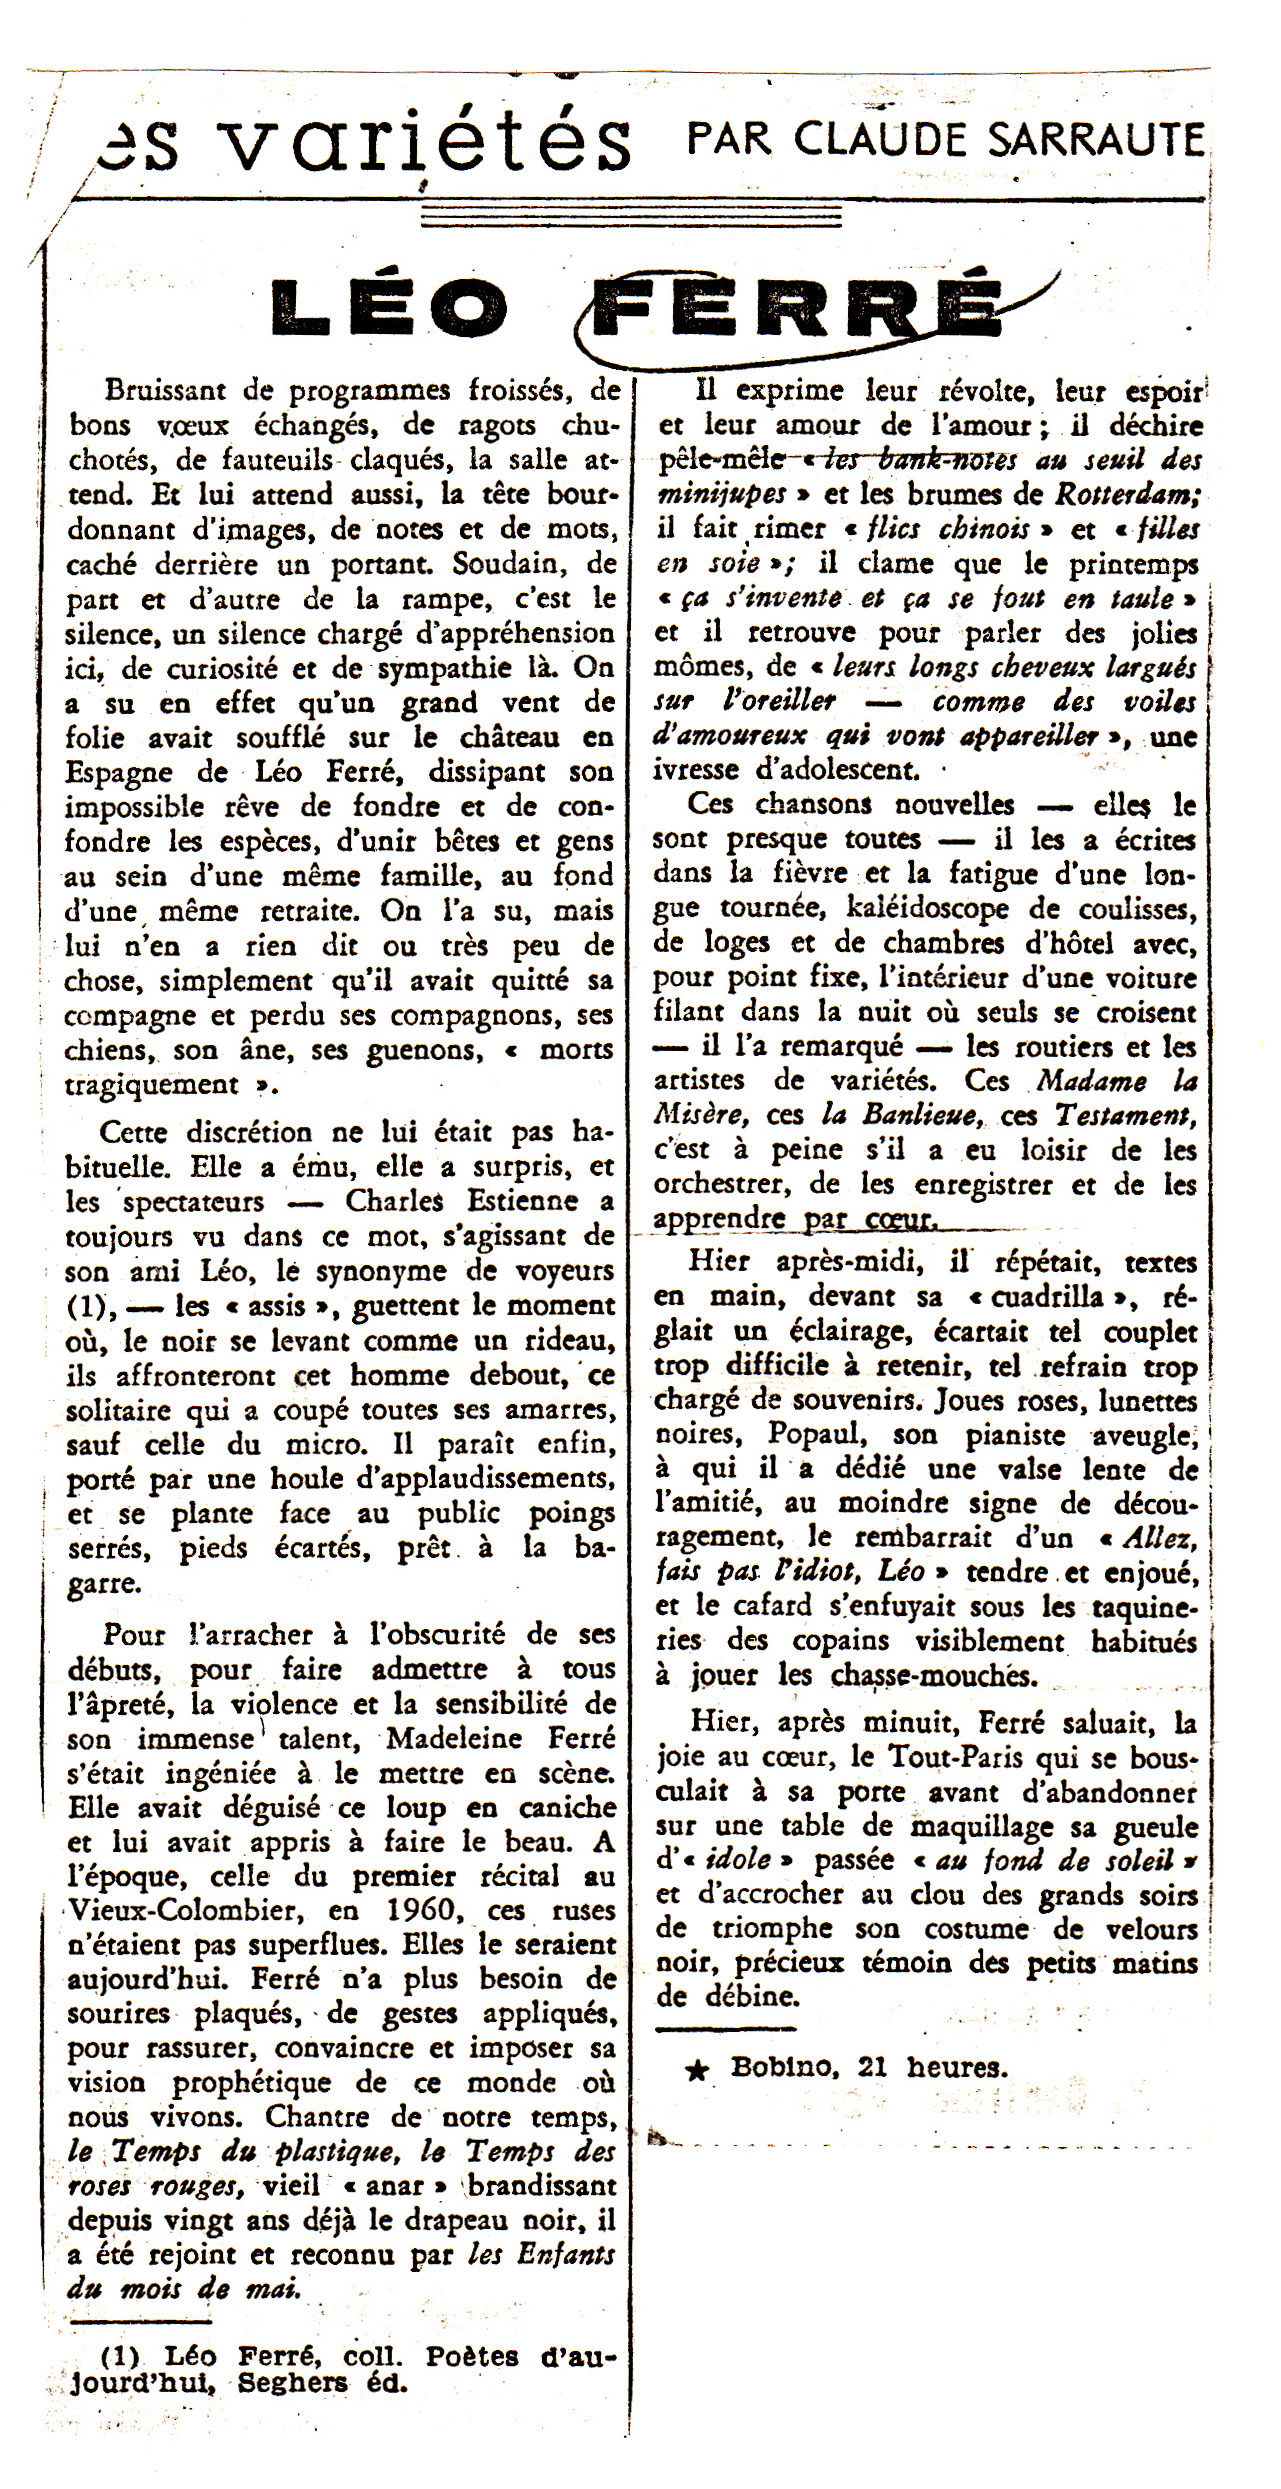 Léo Ferré - Le Monde du 10 janvier 1969